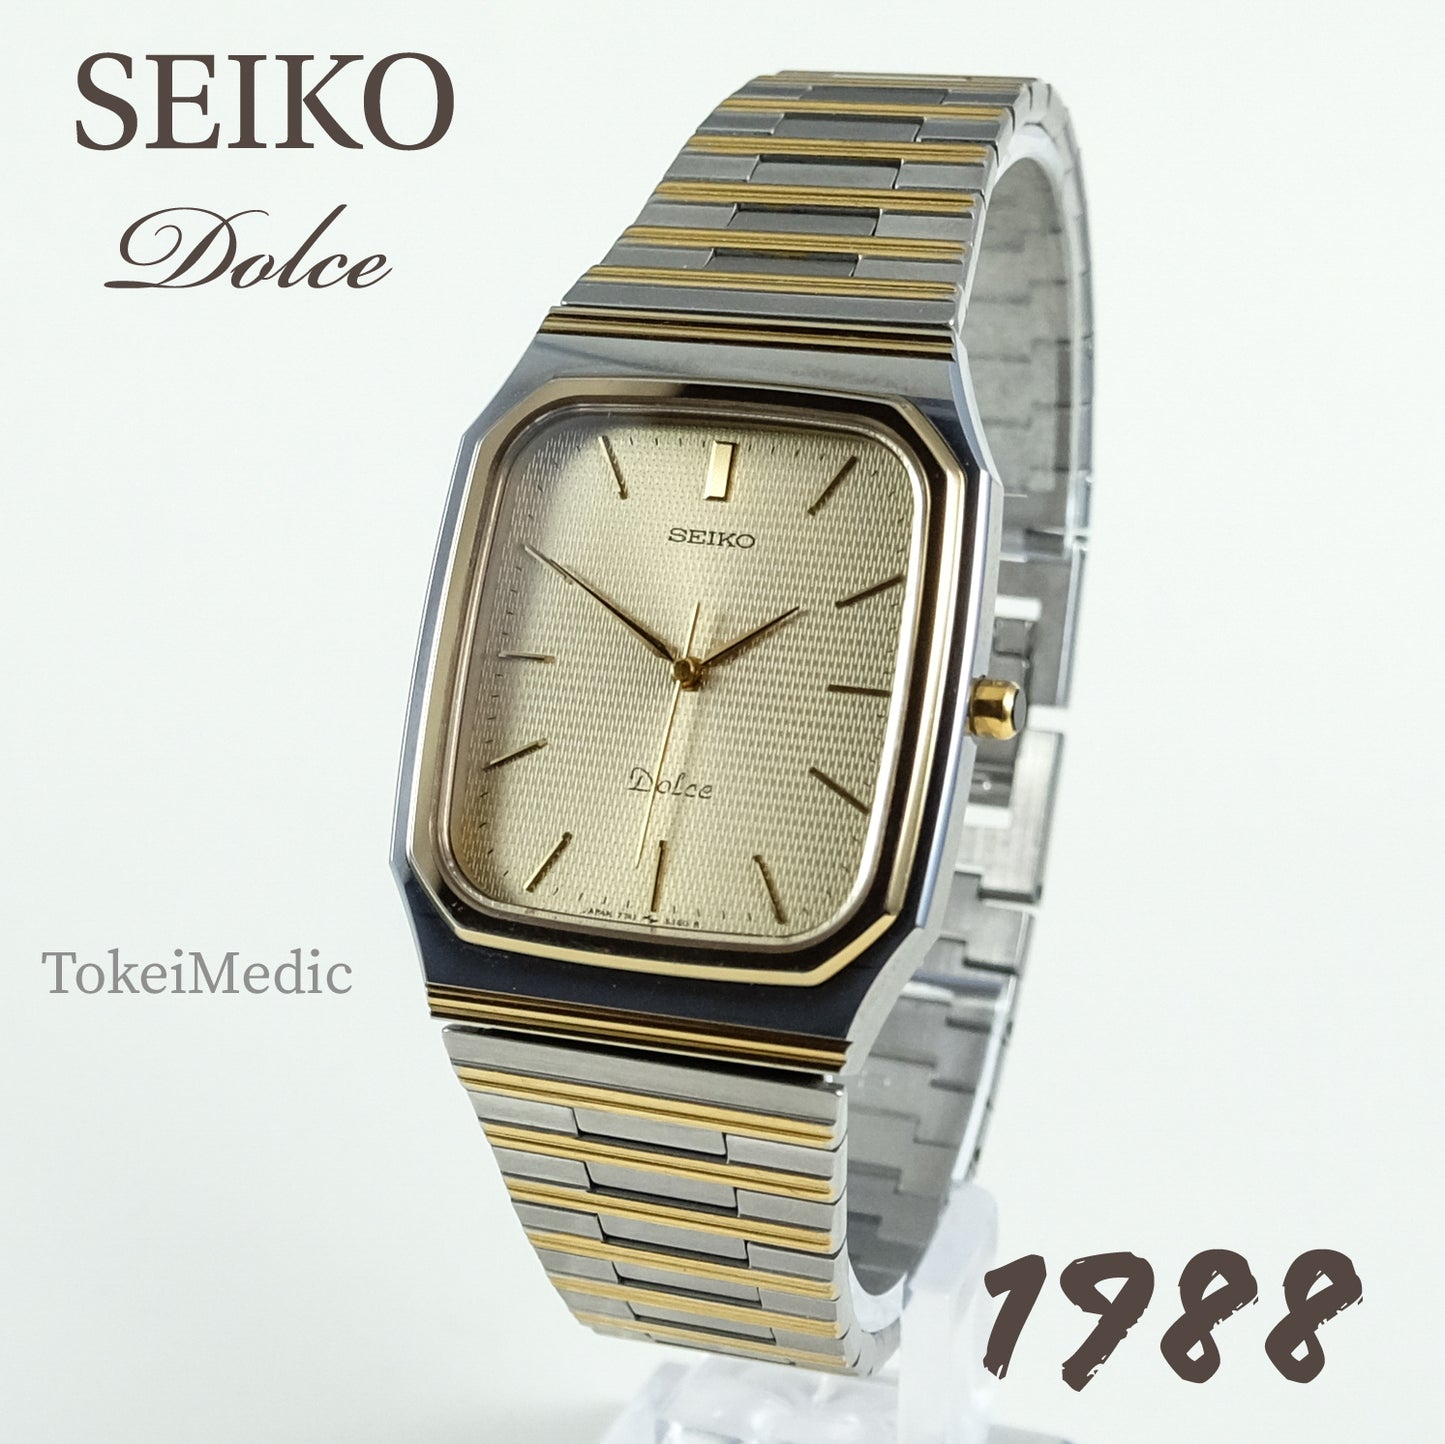 1988 Seiko Dolce 7741-5130